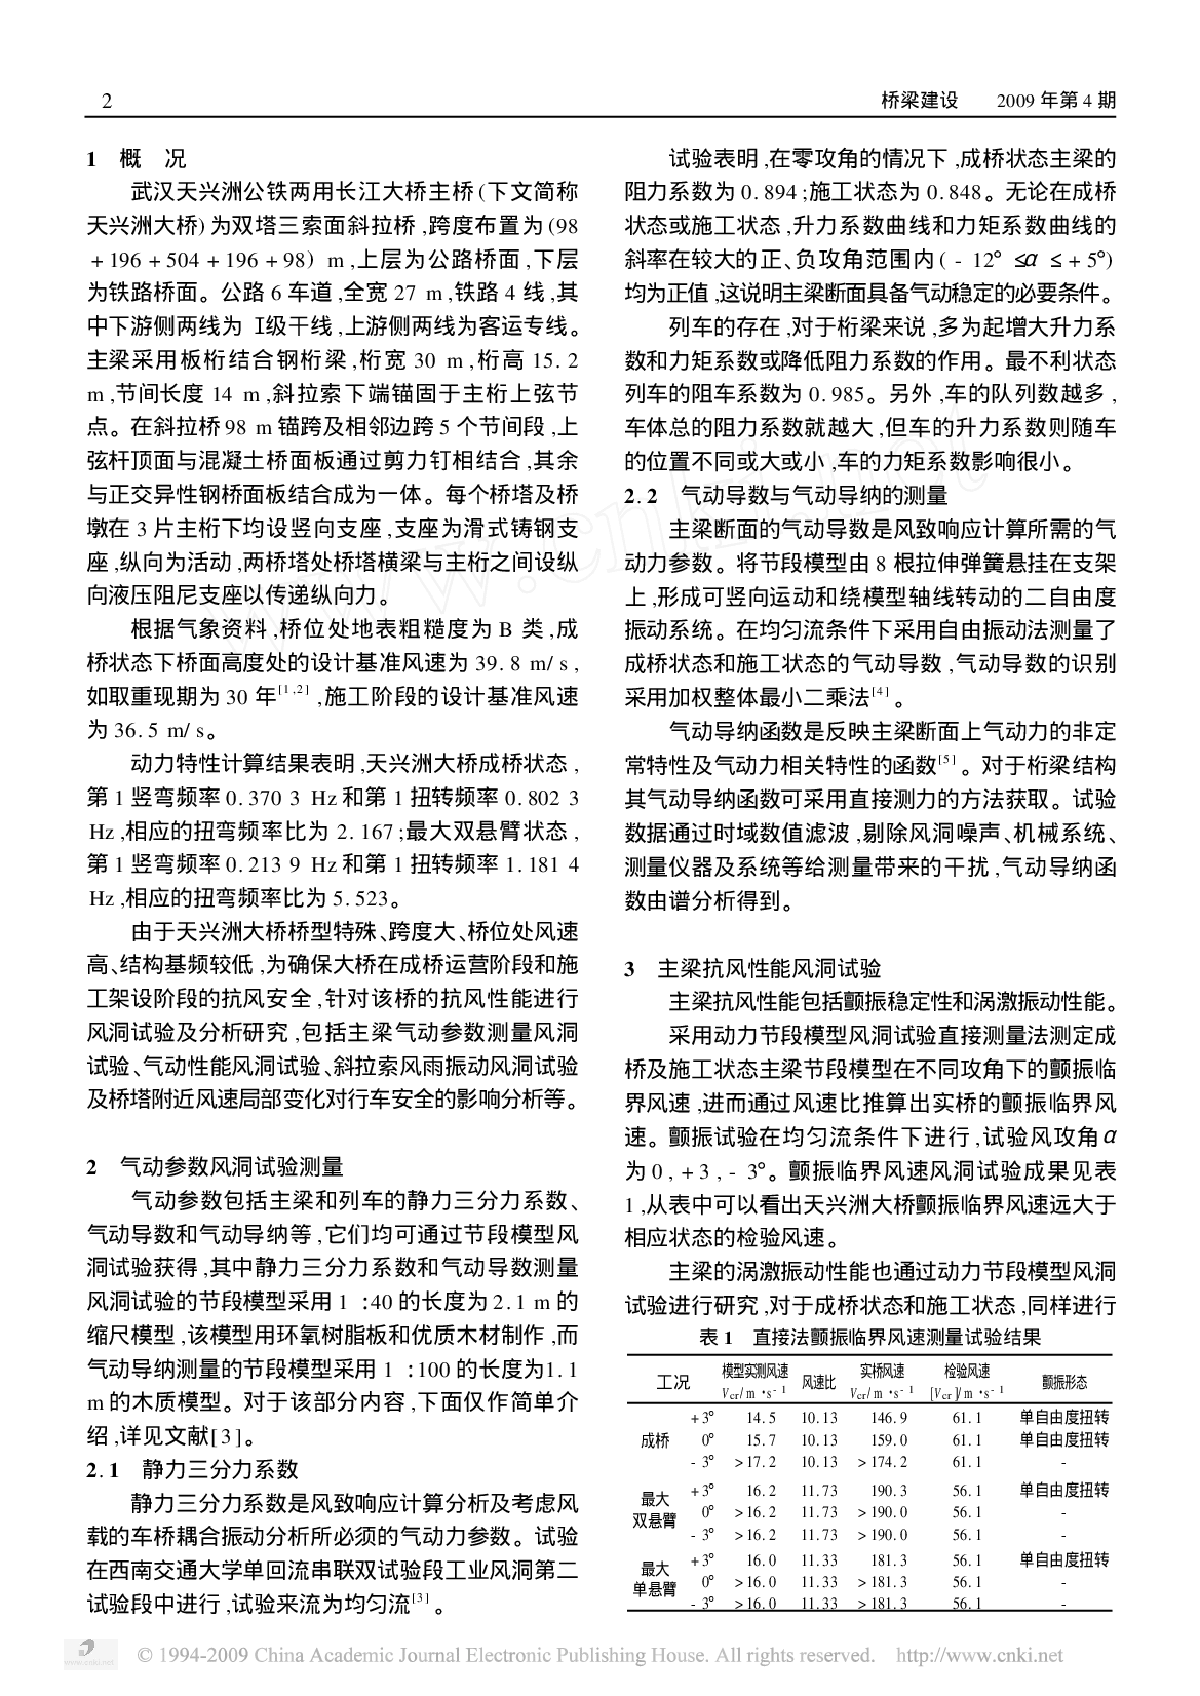 武汉天兴洲公铁两用长江大桥抗风性能研究 -图二